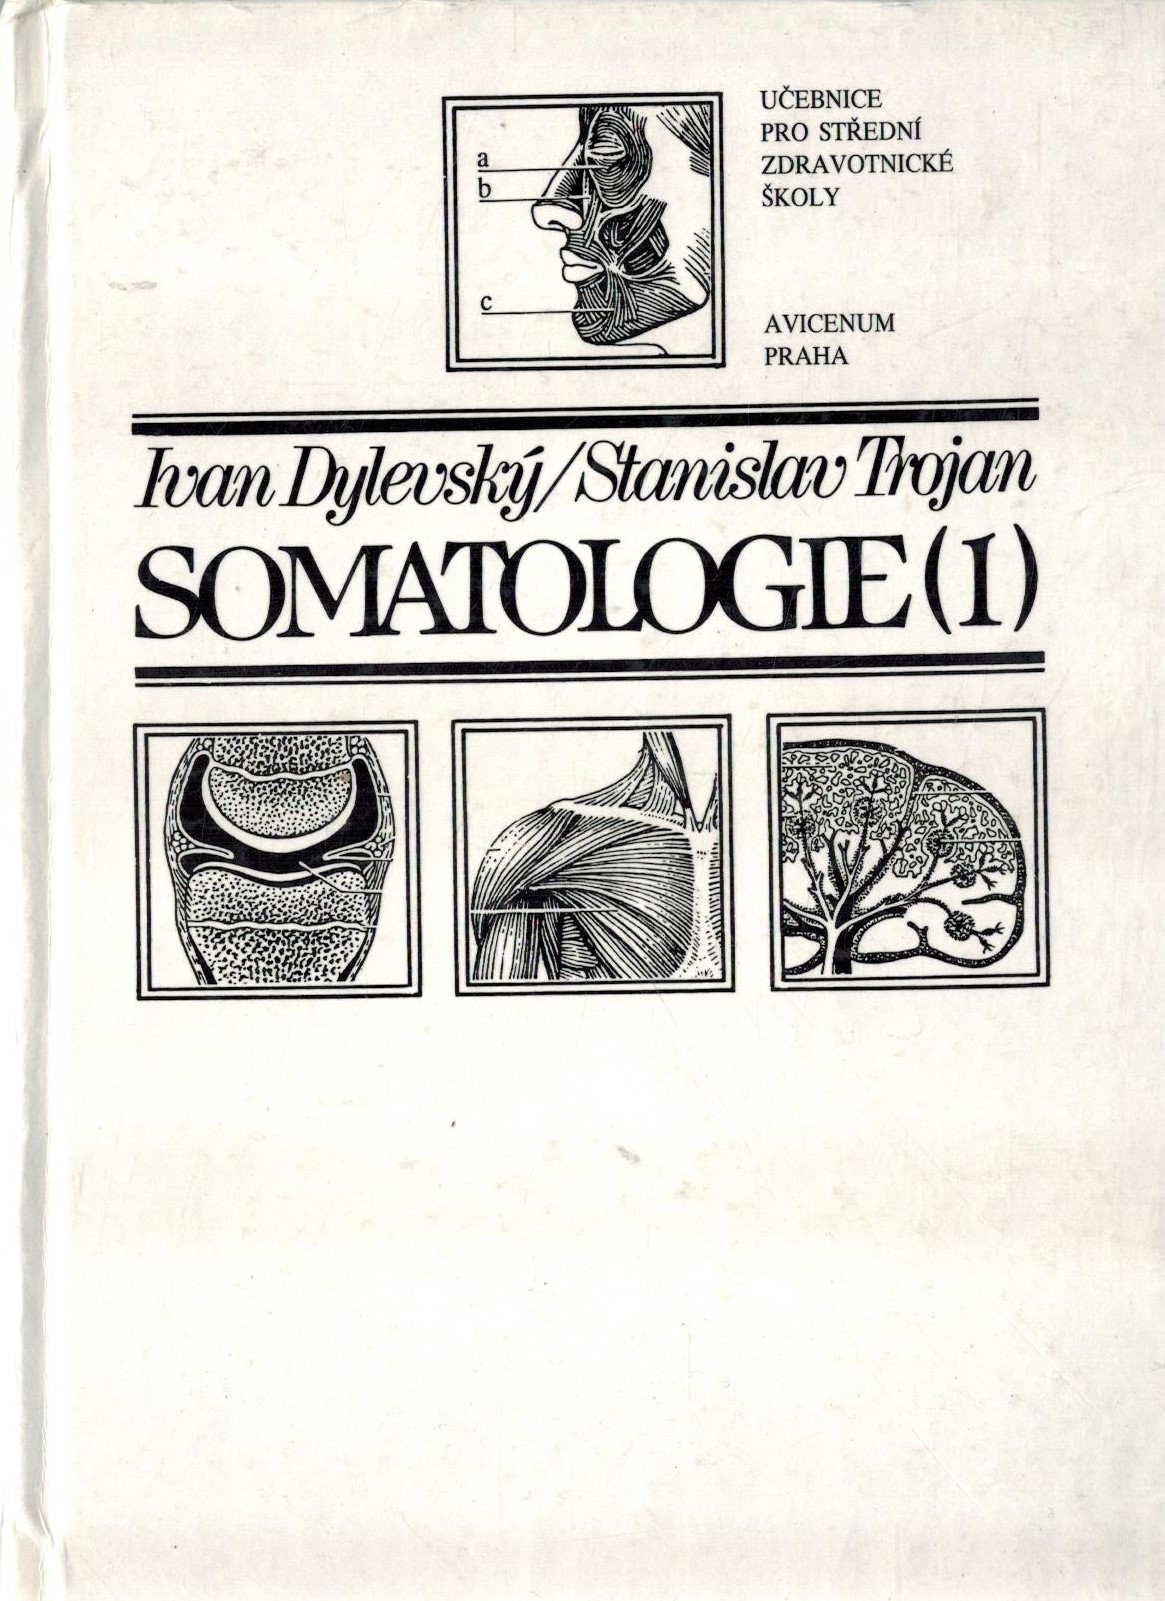 SOMATOLOGIE I